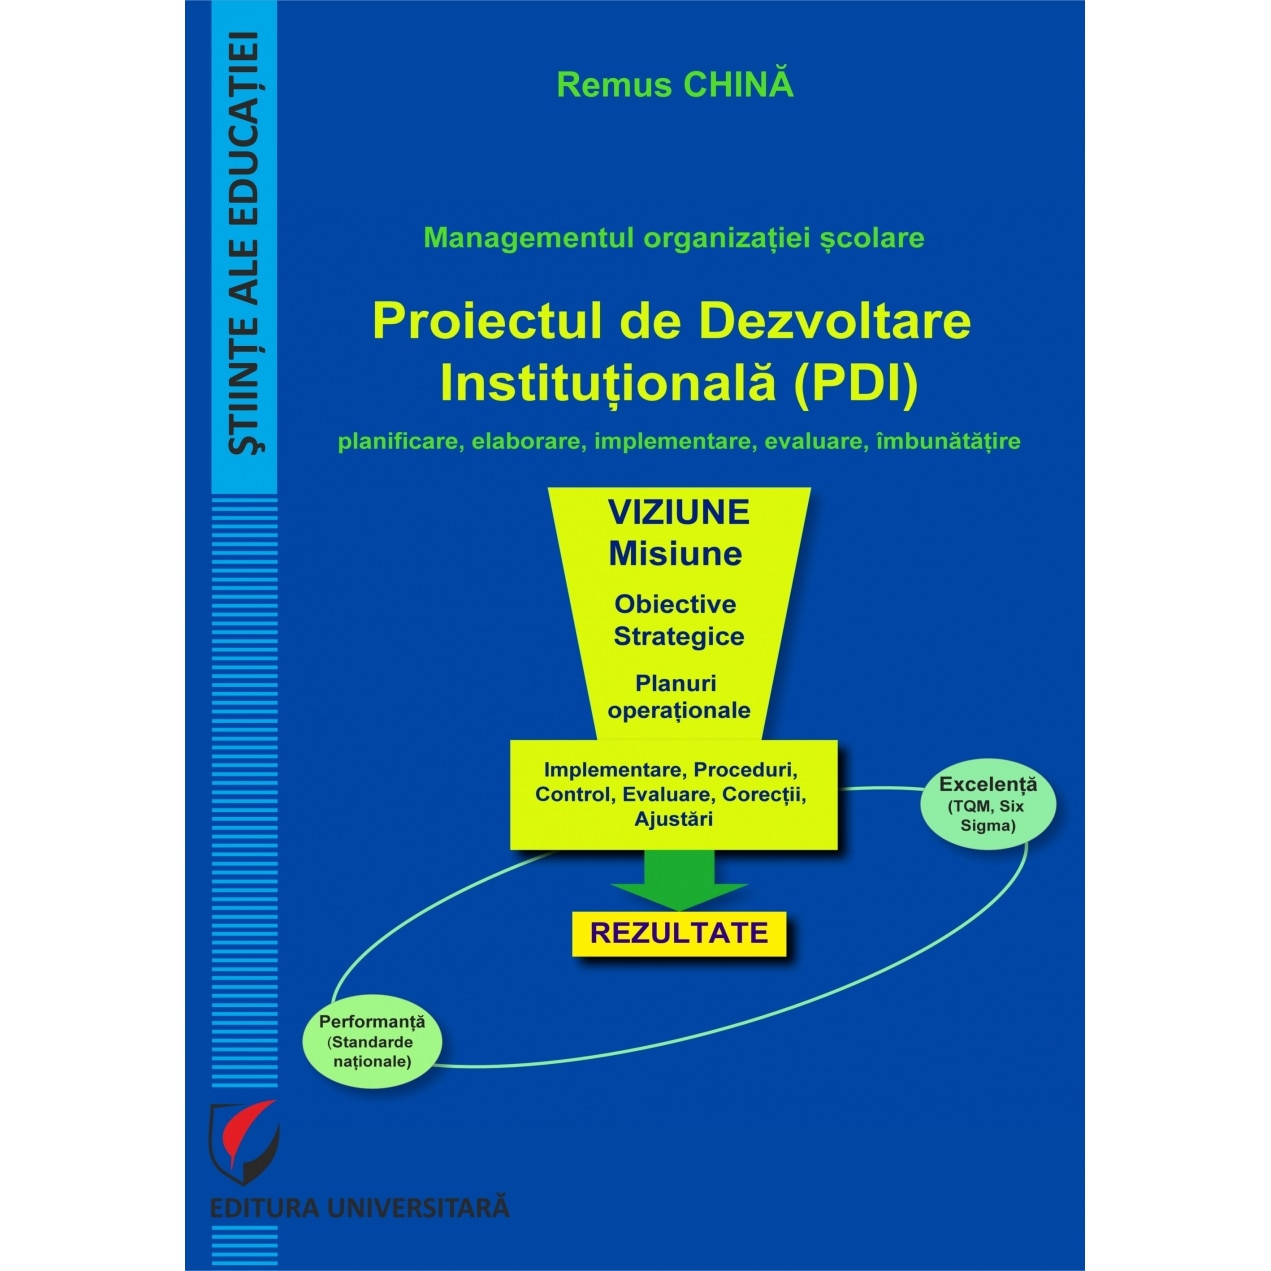 Managementul organizatiei scolare. Proiectul de Dezvoltare Institutionala (PDI) Remus - eMAG.ro